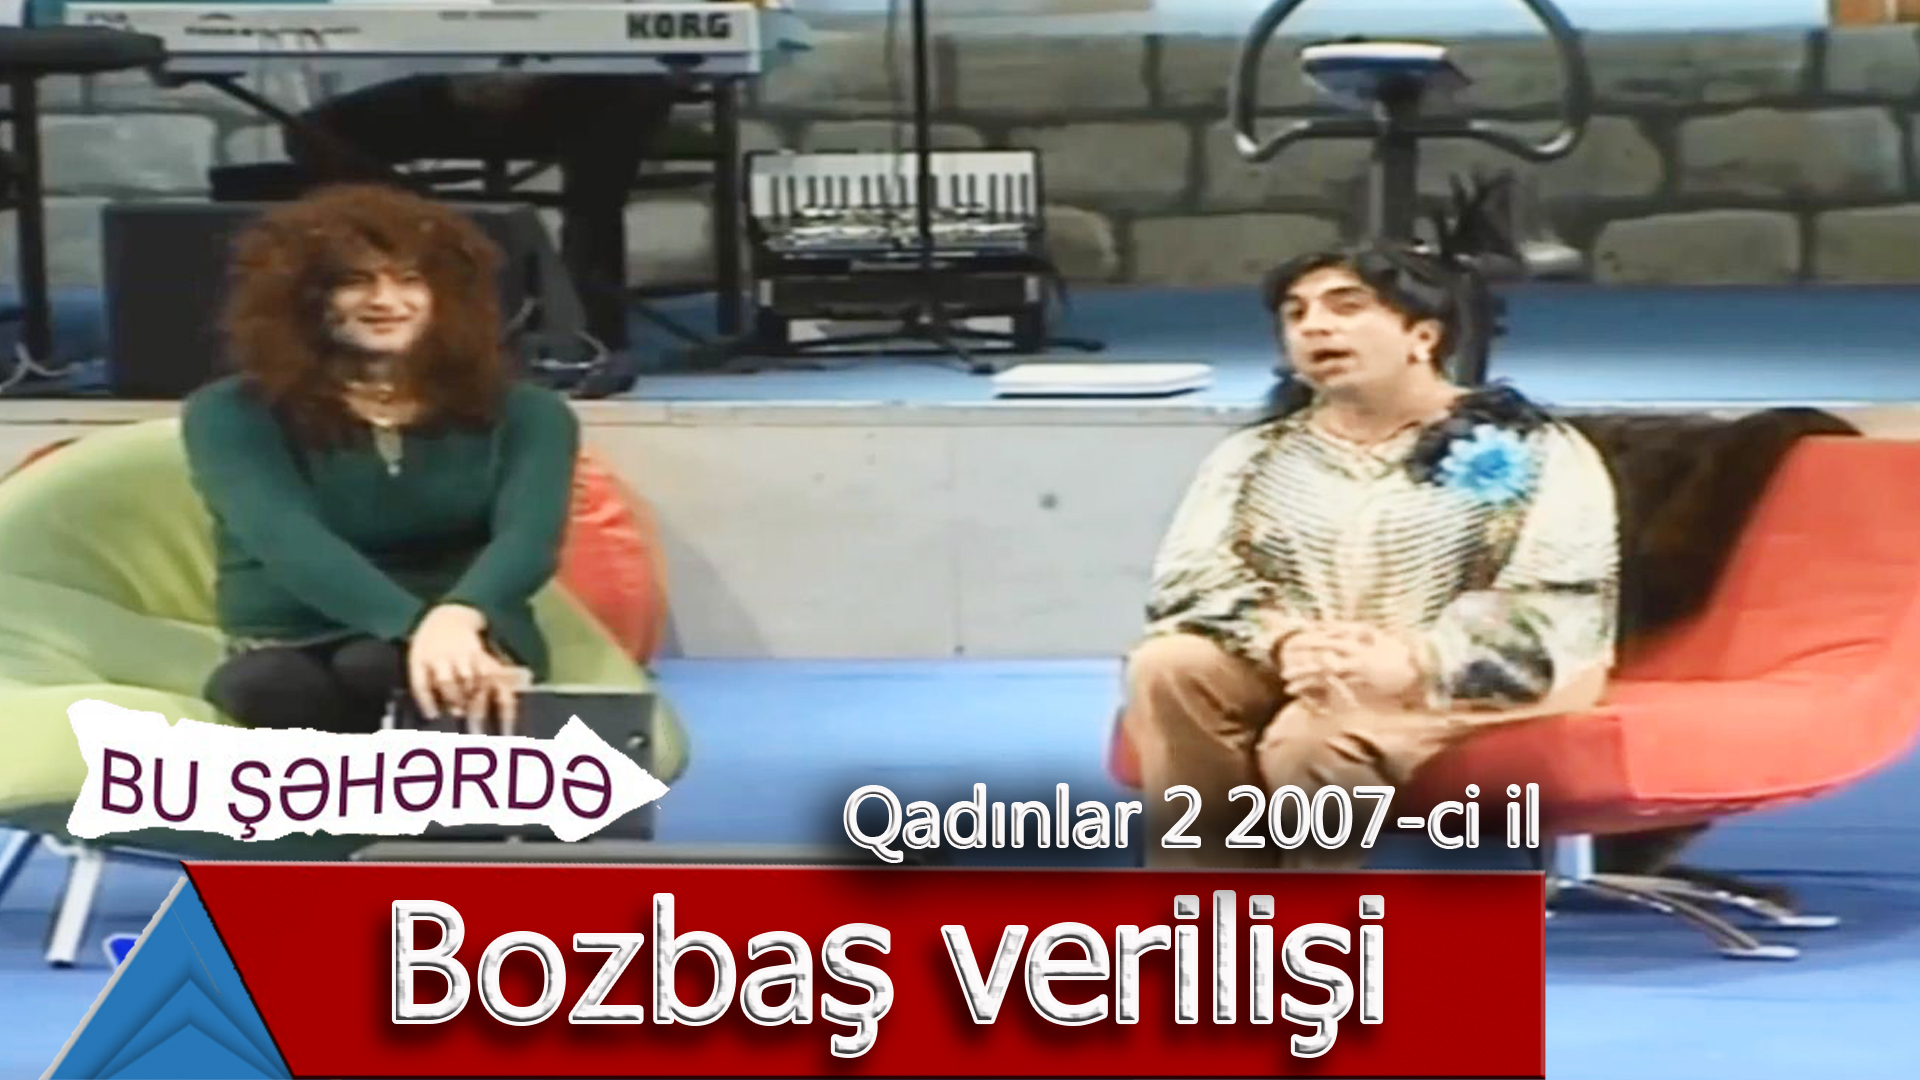 Bu Şəhərdə - Bozbaş verilişi (Qadınlar 2, 2007)